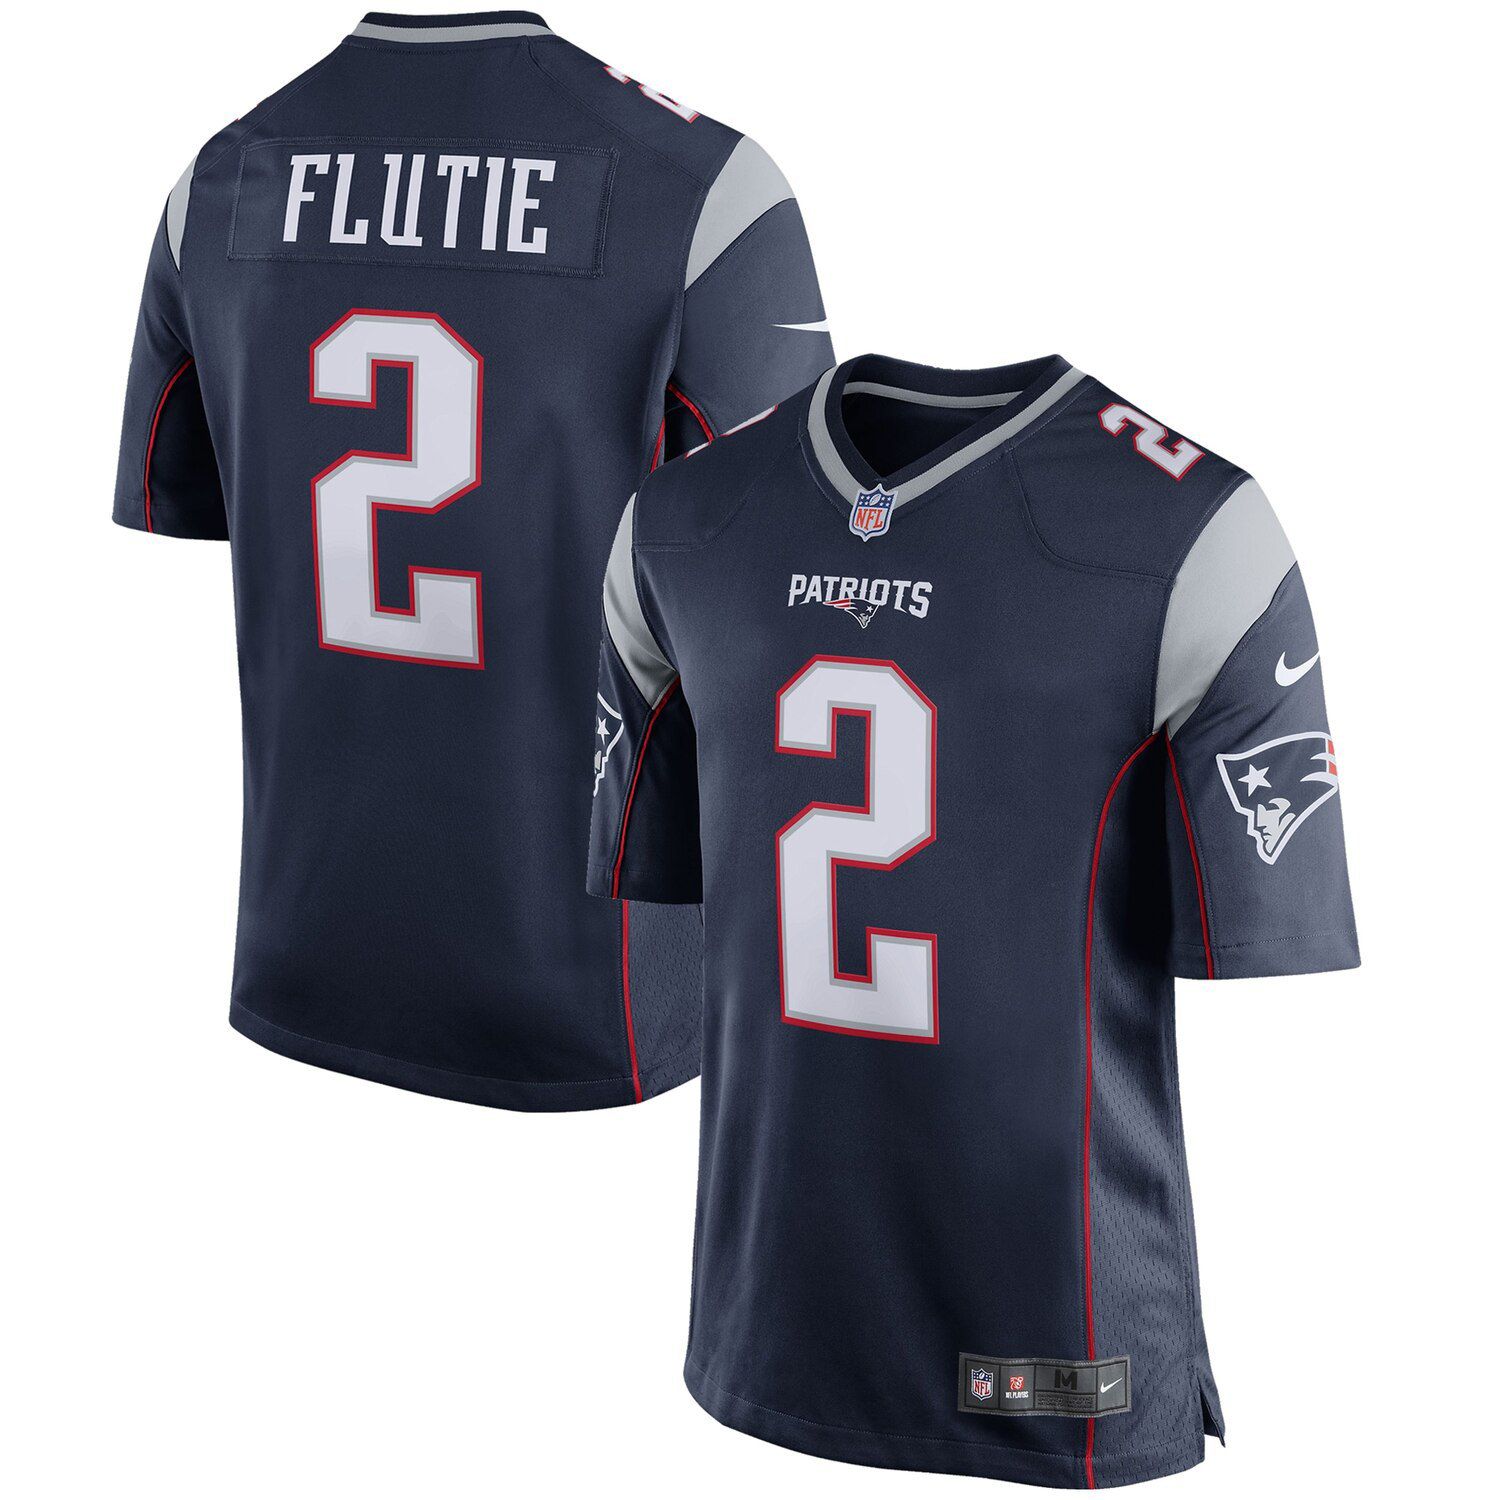 doug flutie patriots jersey for sale